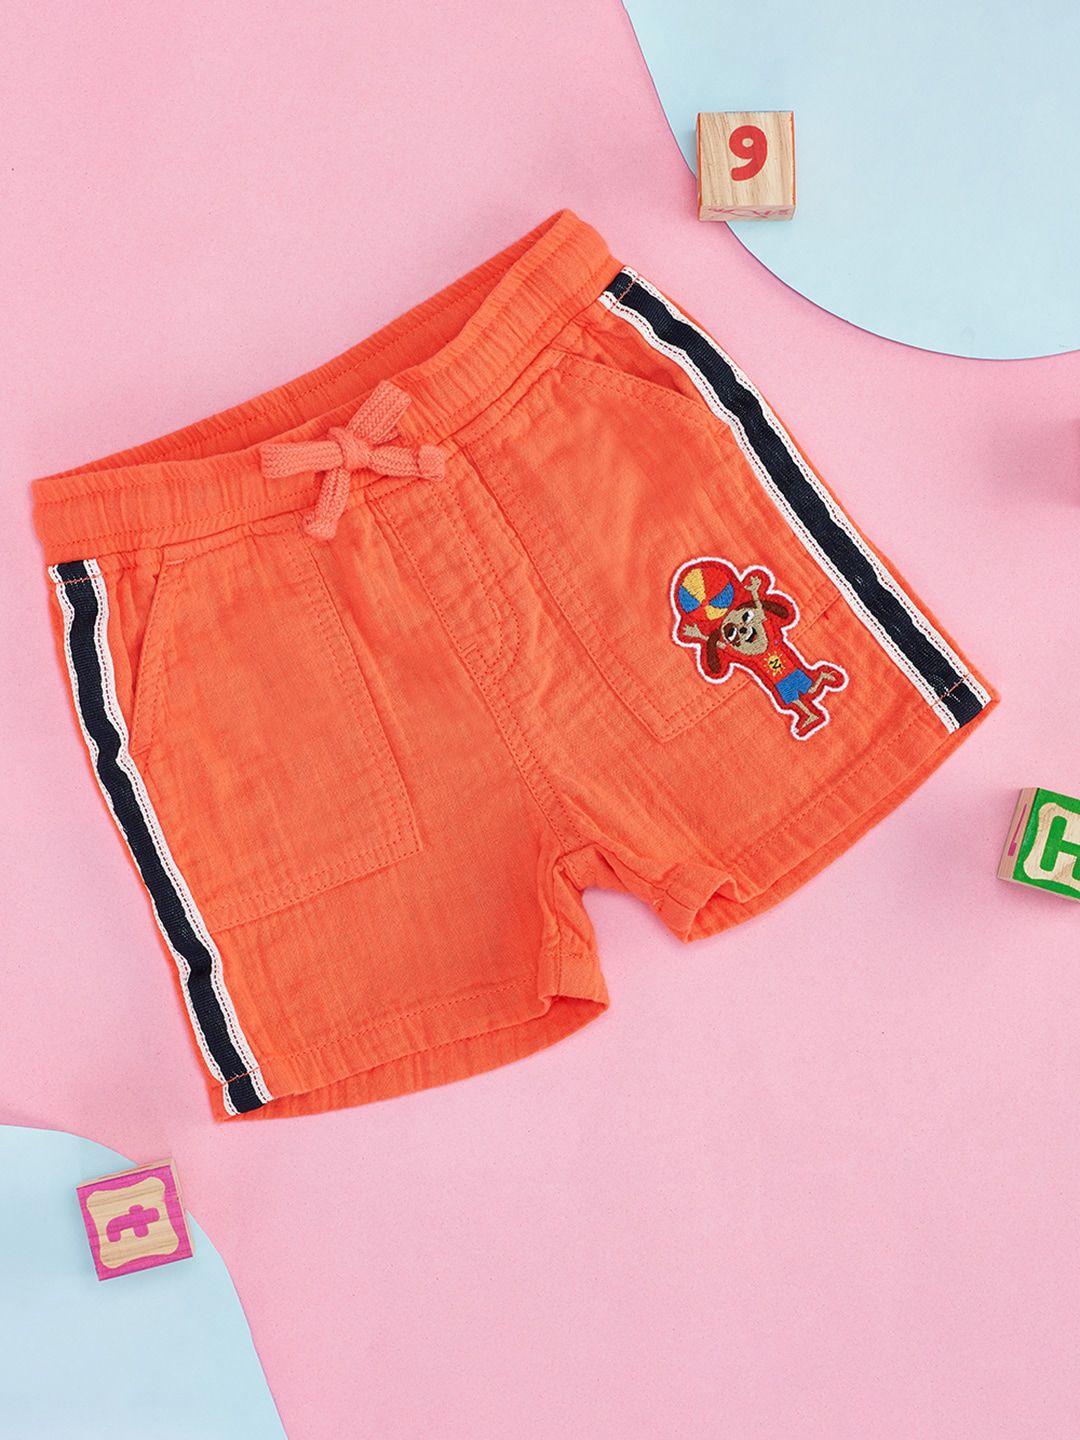 pantaloons baby boys coral shorts